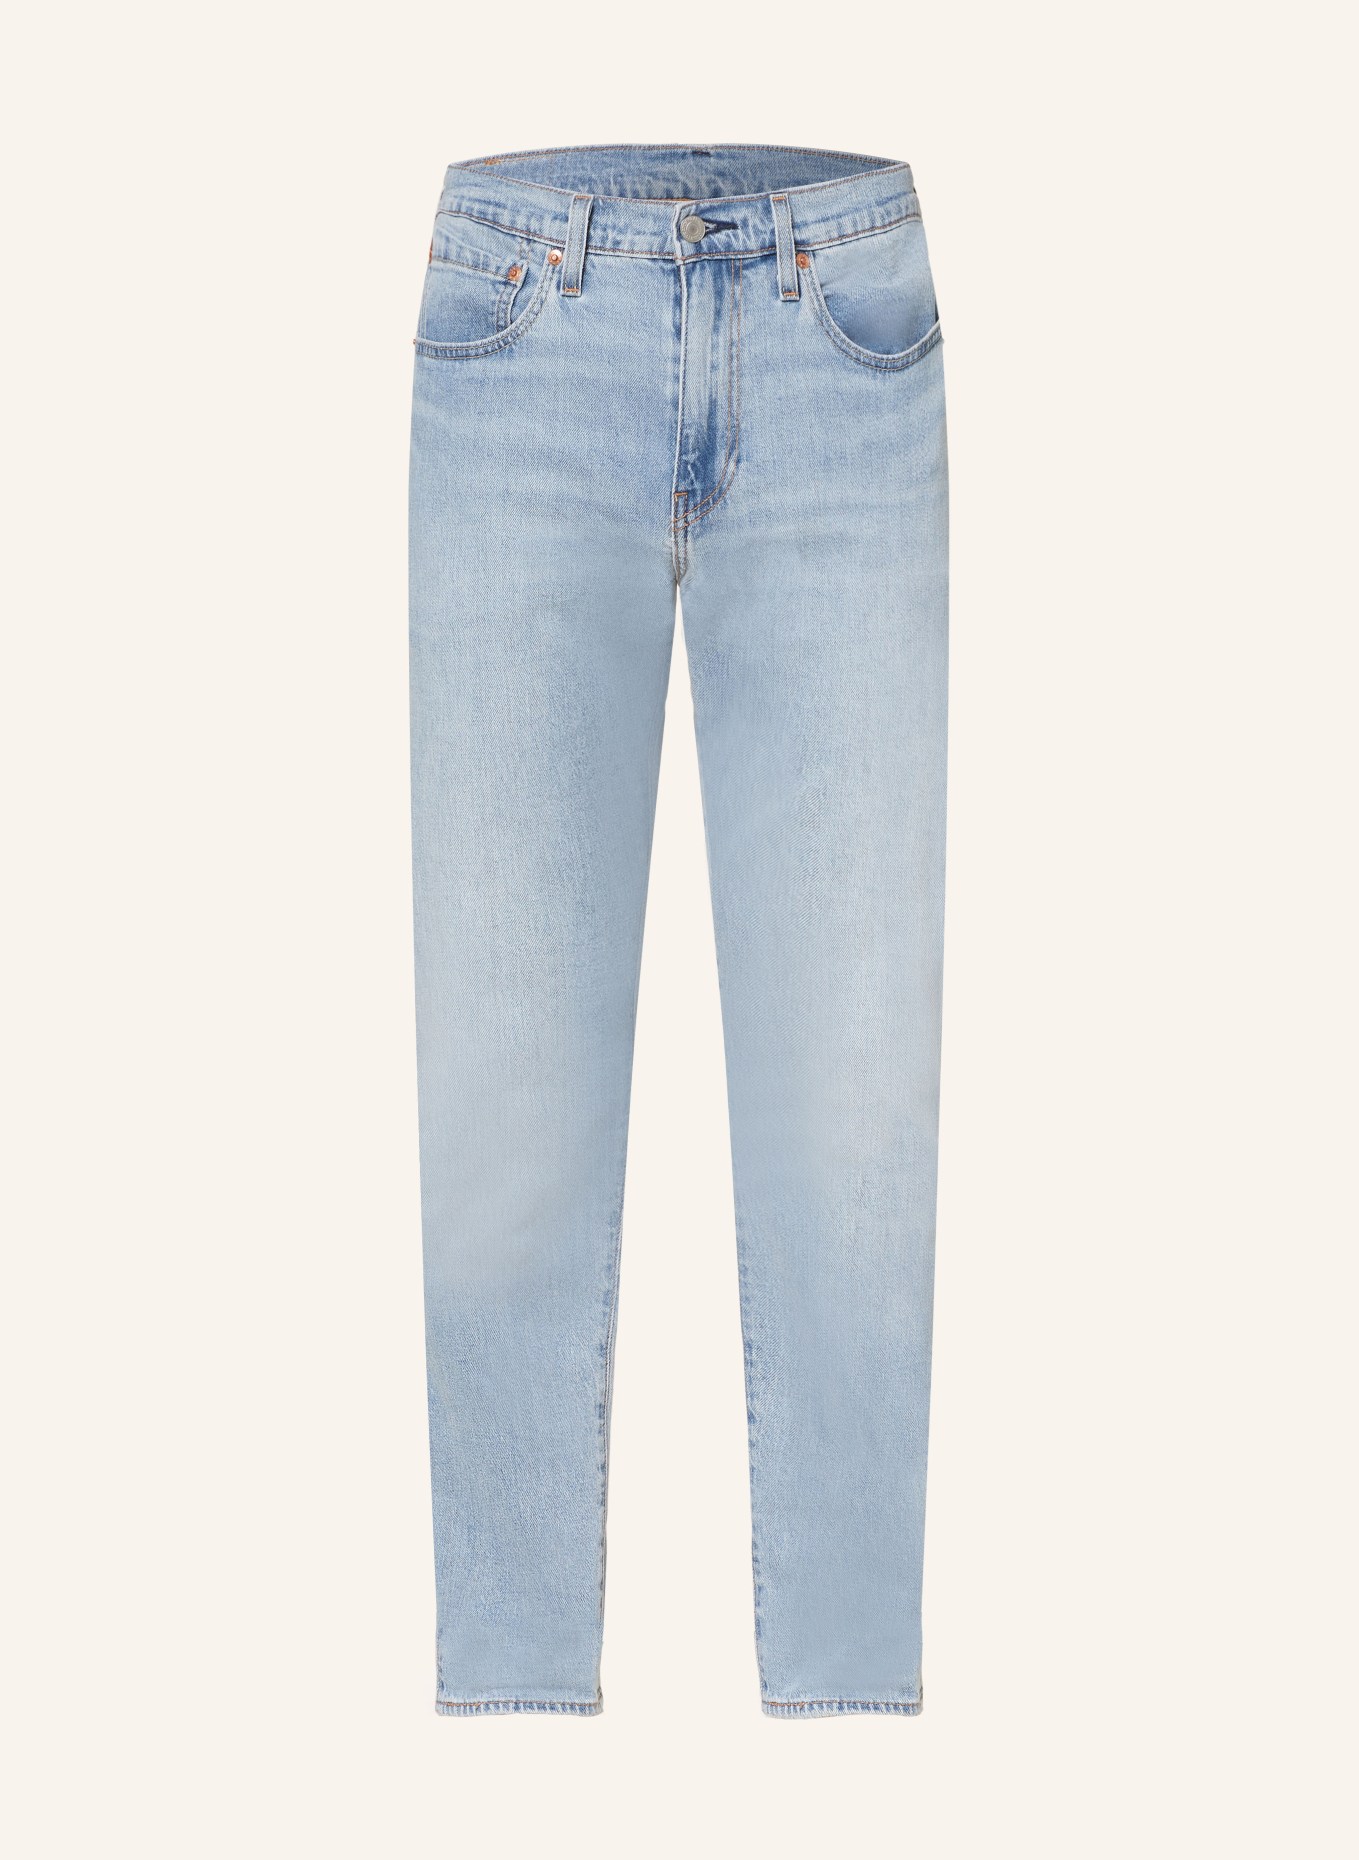 Levi's® Jeans 502 TAPER regular fit, Color: 17 Med Indigo - Worn In (Image 1)